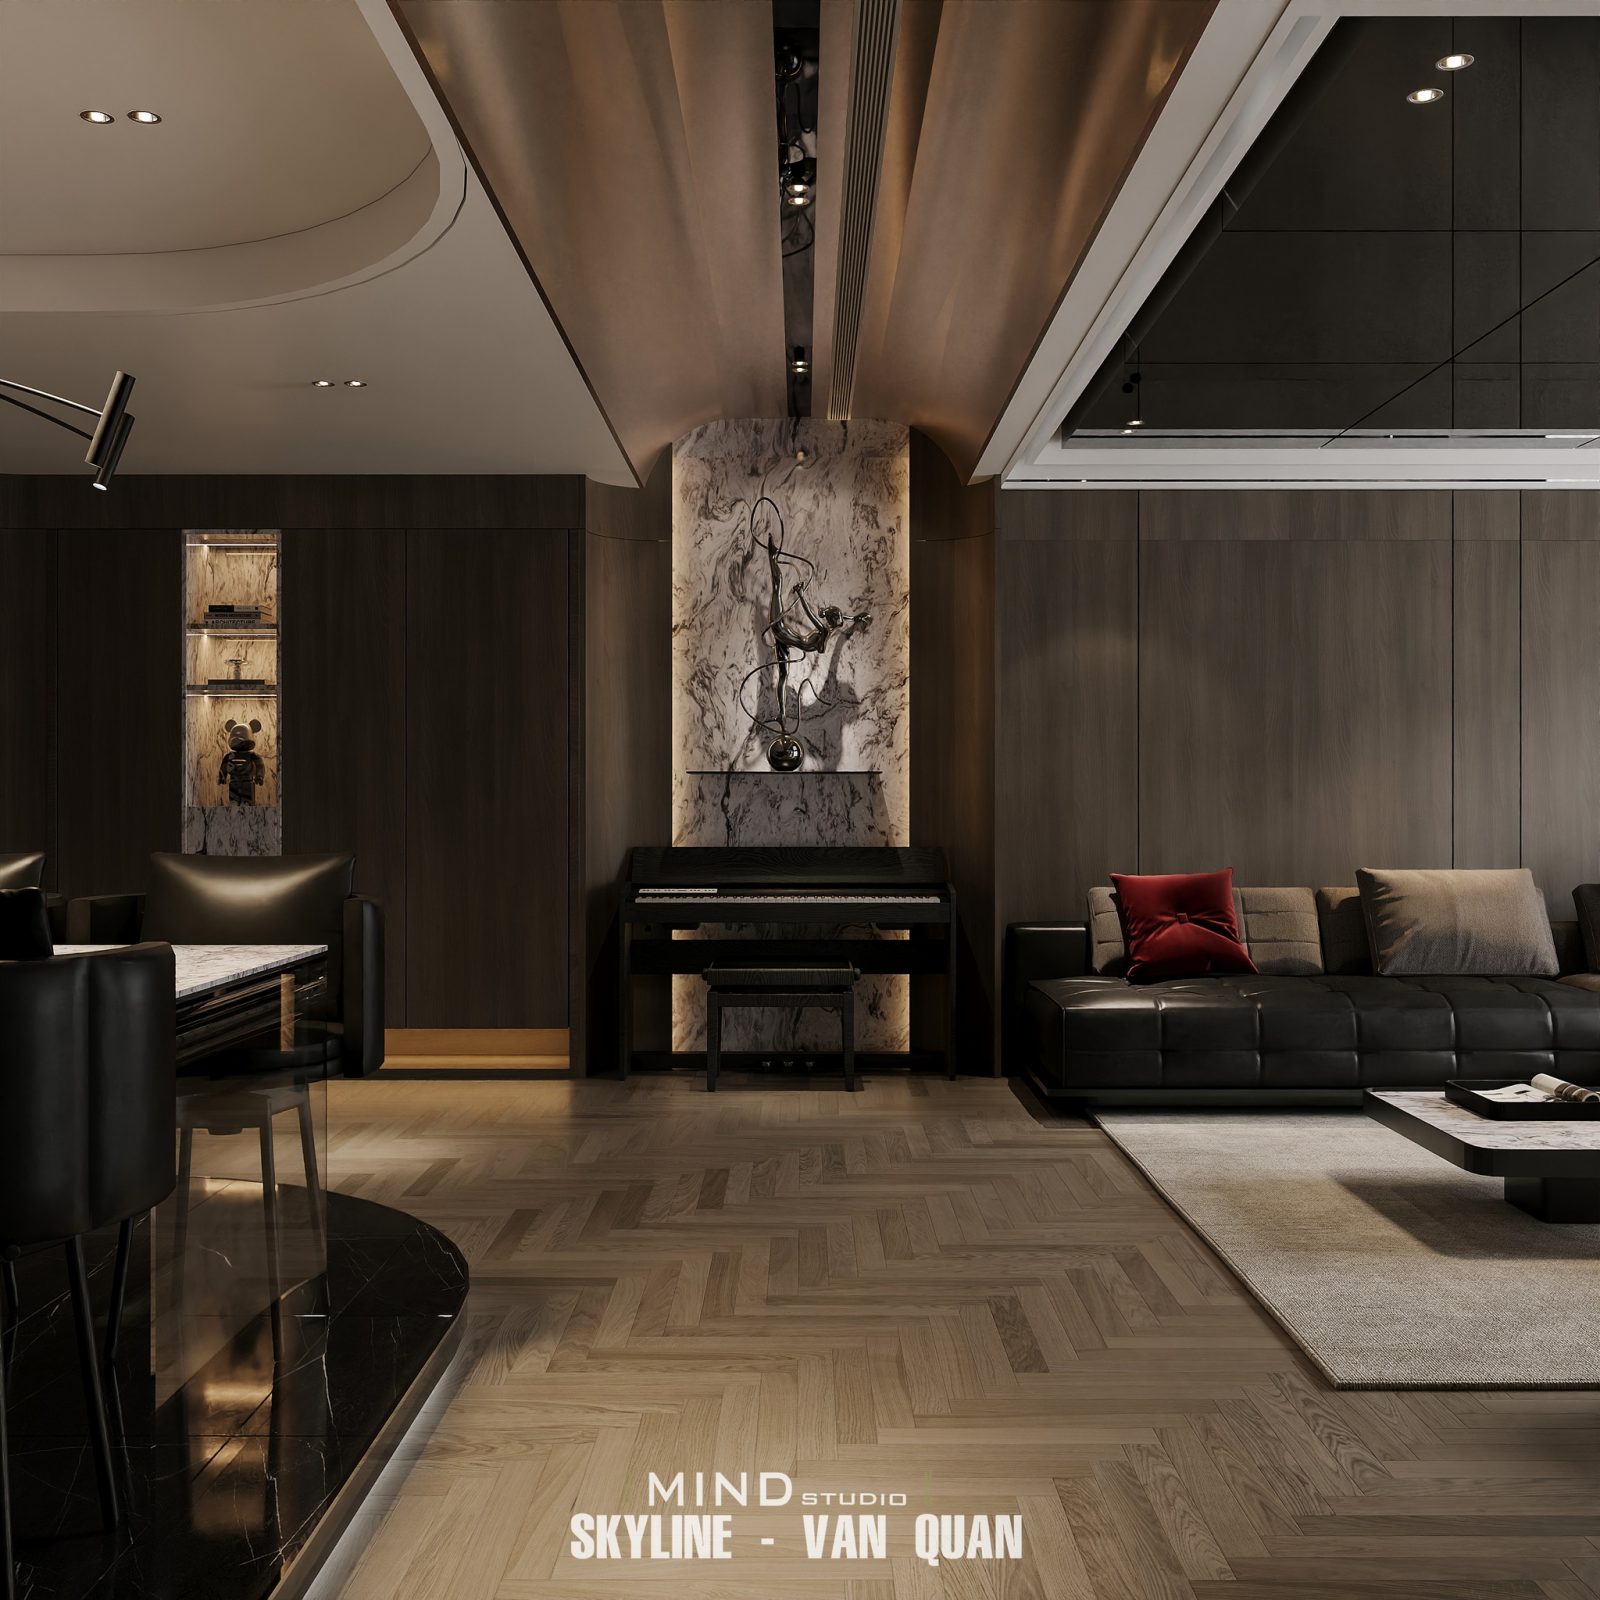 Free living room 3d models for download 